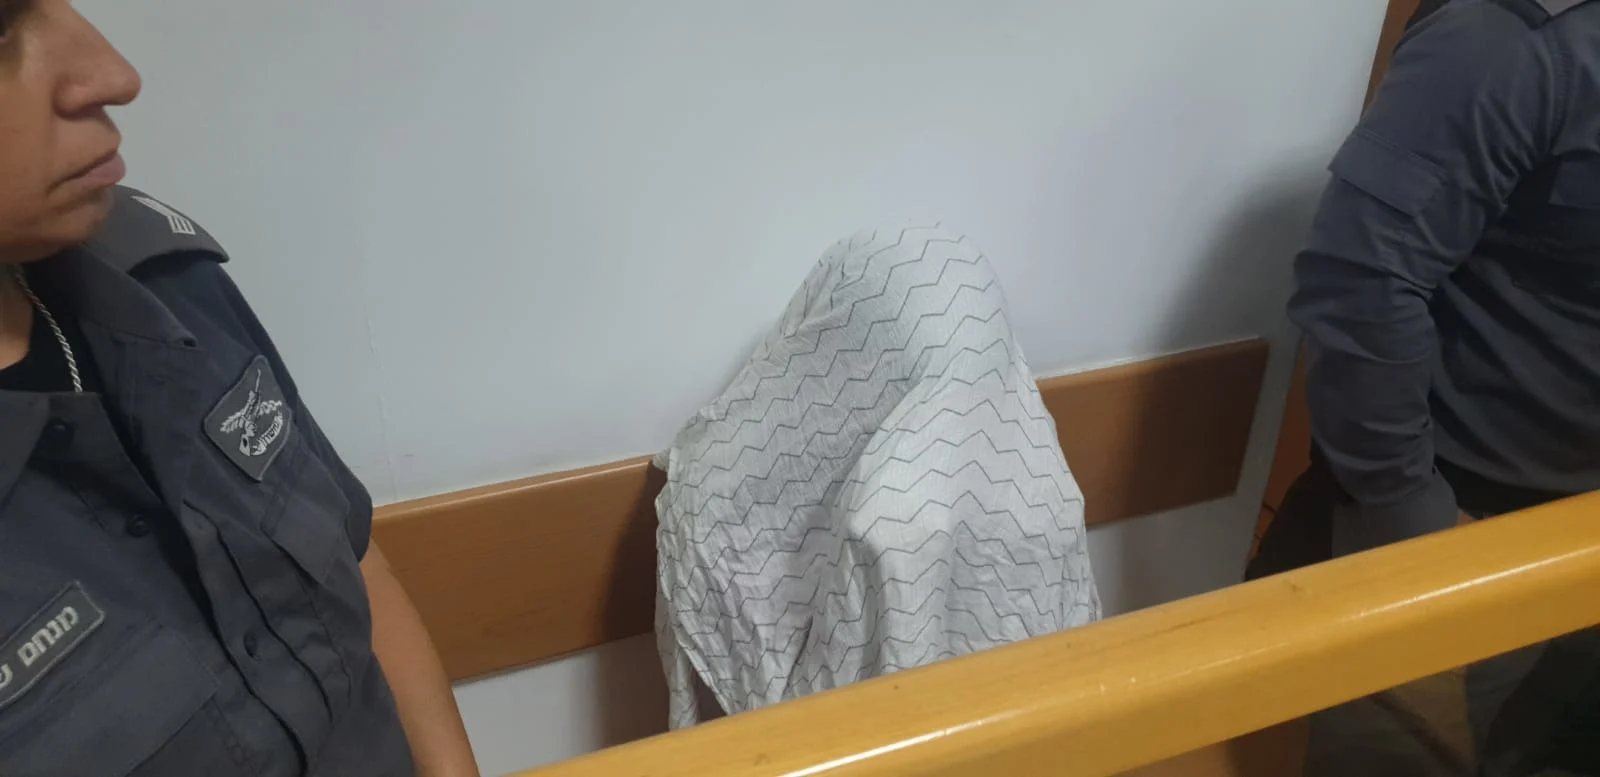 בית משפט השלום שחרר למעצר בית את המורה שחשודה בהטרדה מינית